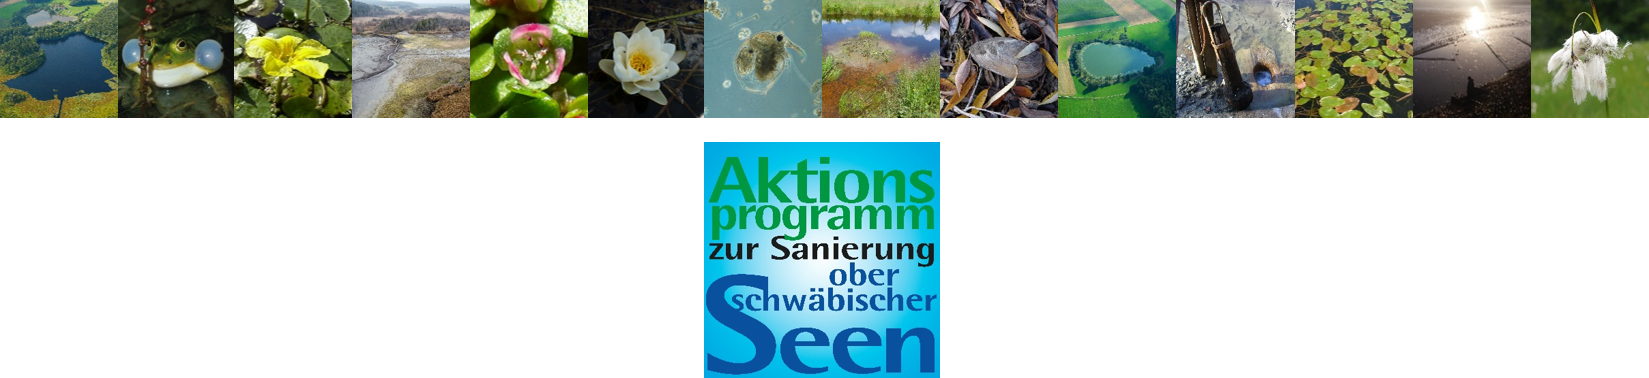 Logo Aktionsprogramm zur Sanierung oberschwäbischer Seen